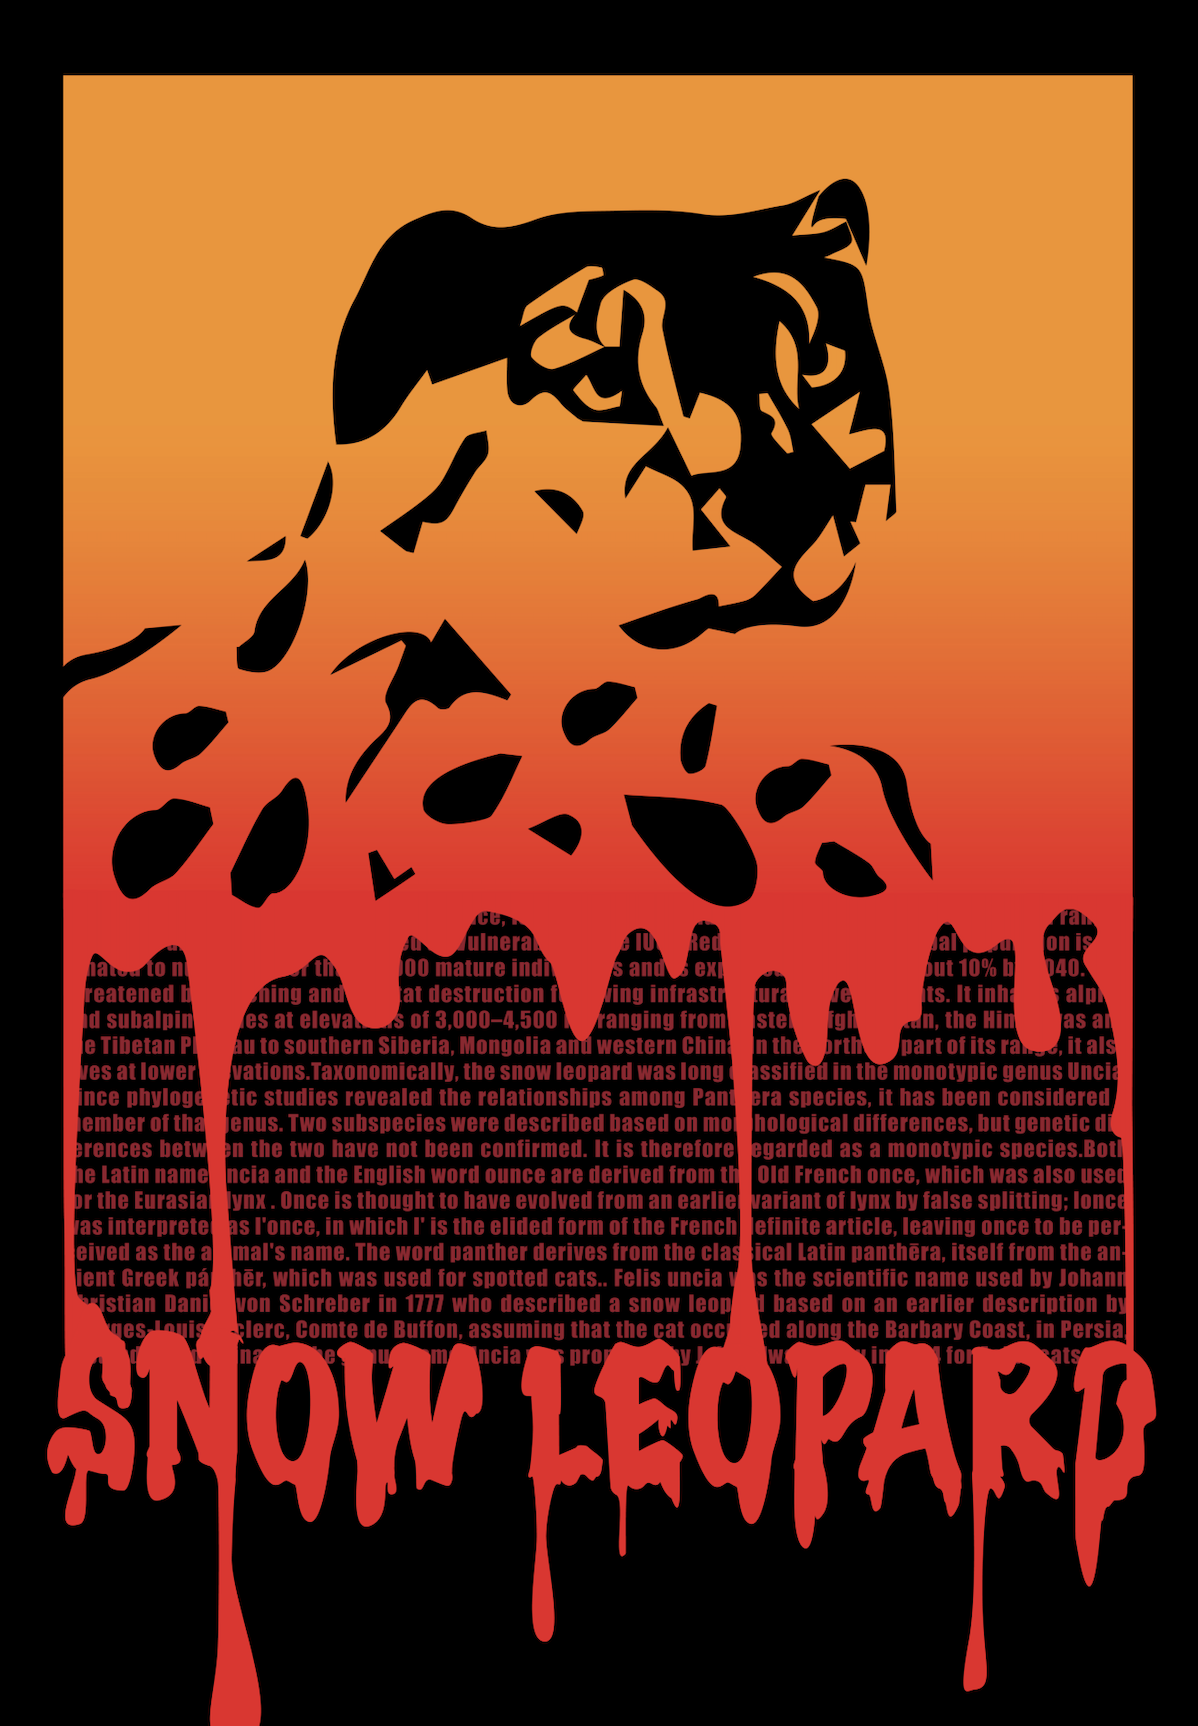 Snow Leopard Extinction